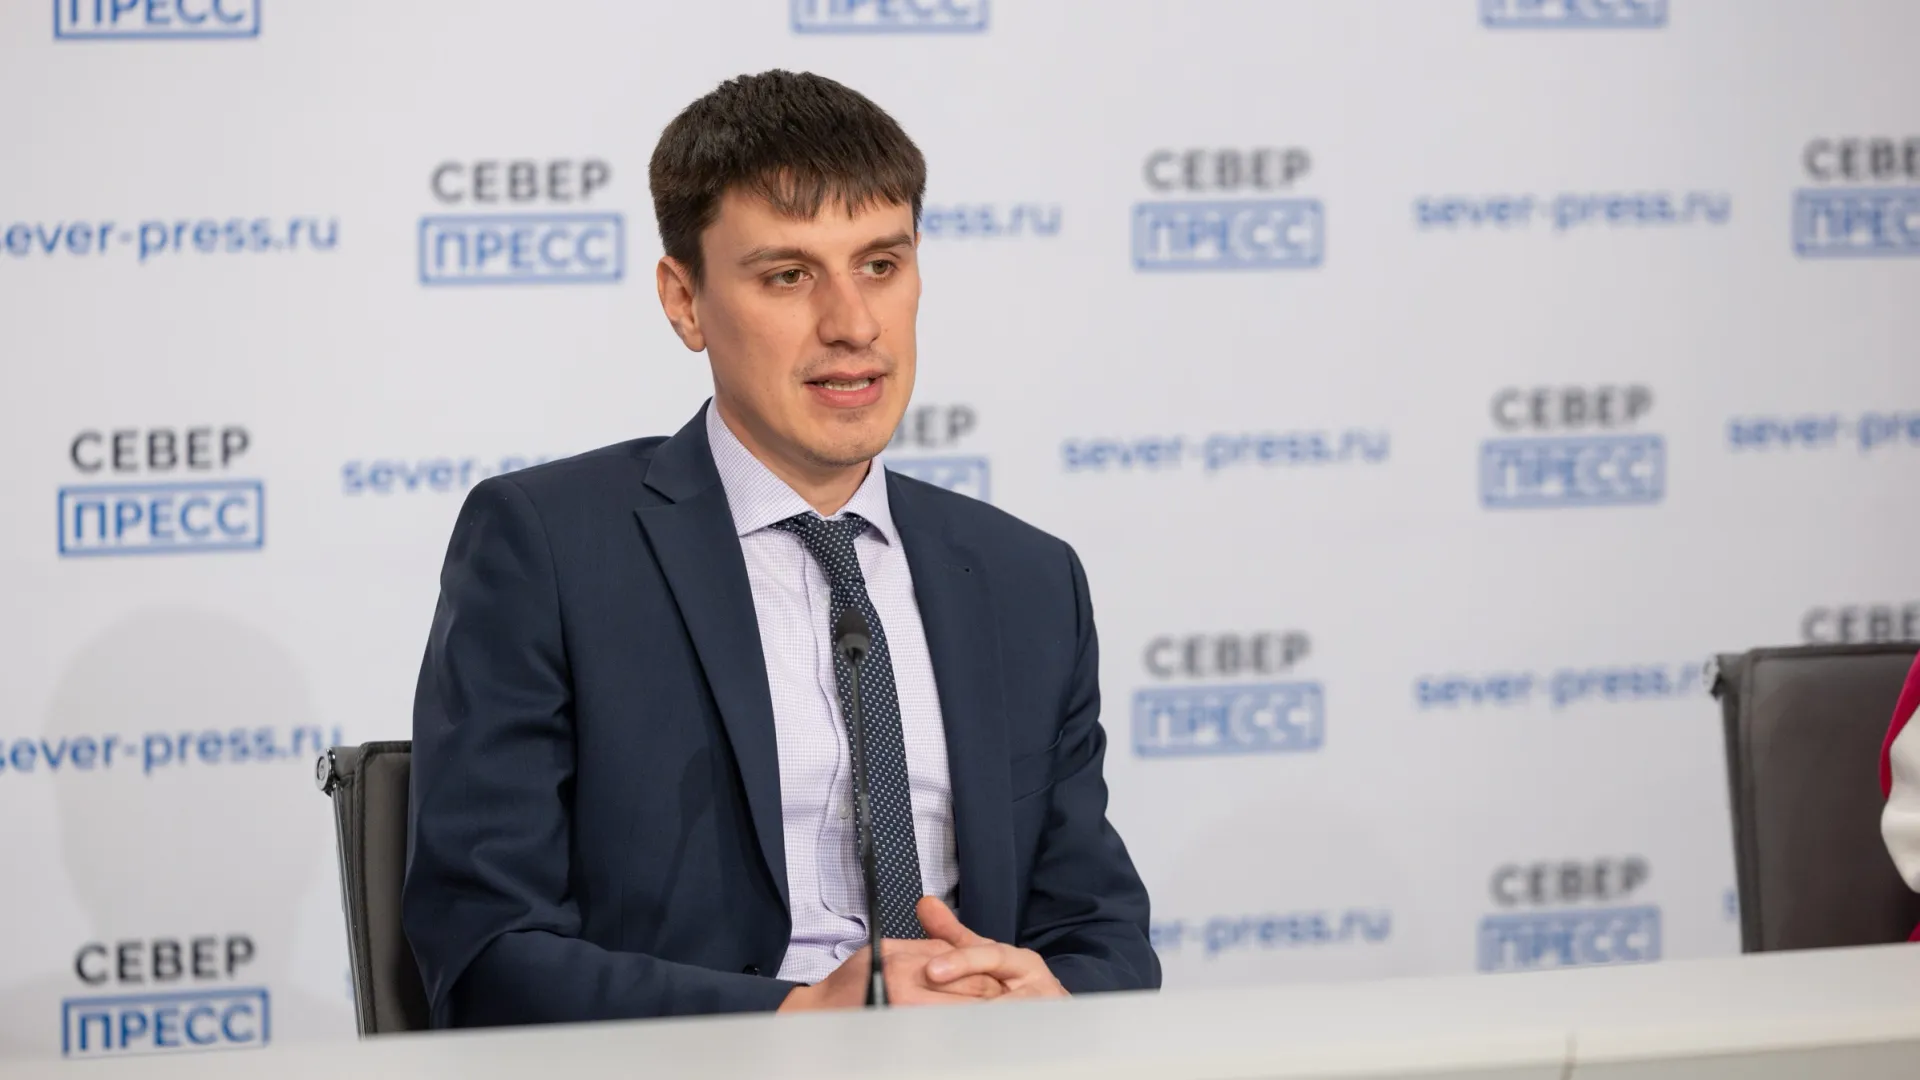 Александр Курзаев рассказал о том, чем отличается социальное предпринимательство от обычного бизнеса. Фото: Федор Воронов / «Ямал-Медиа»